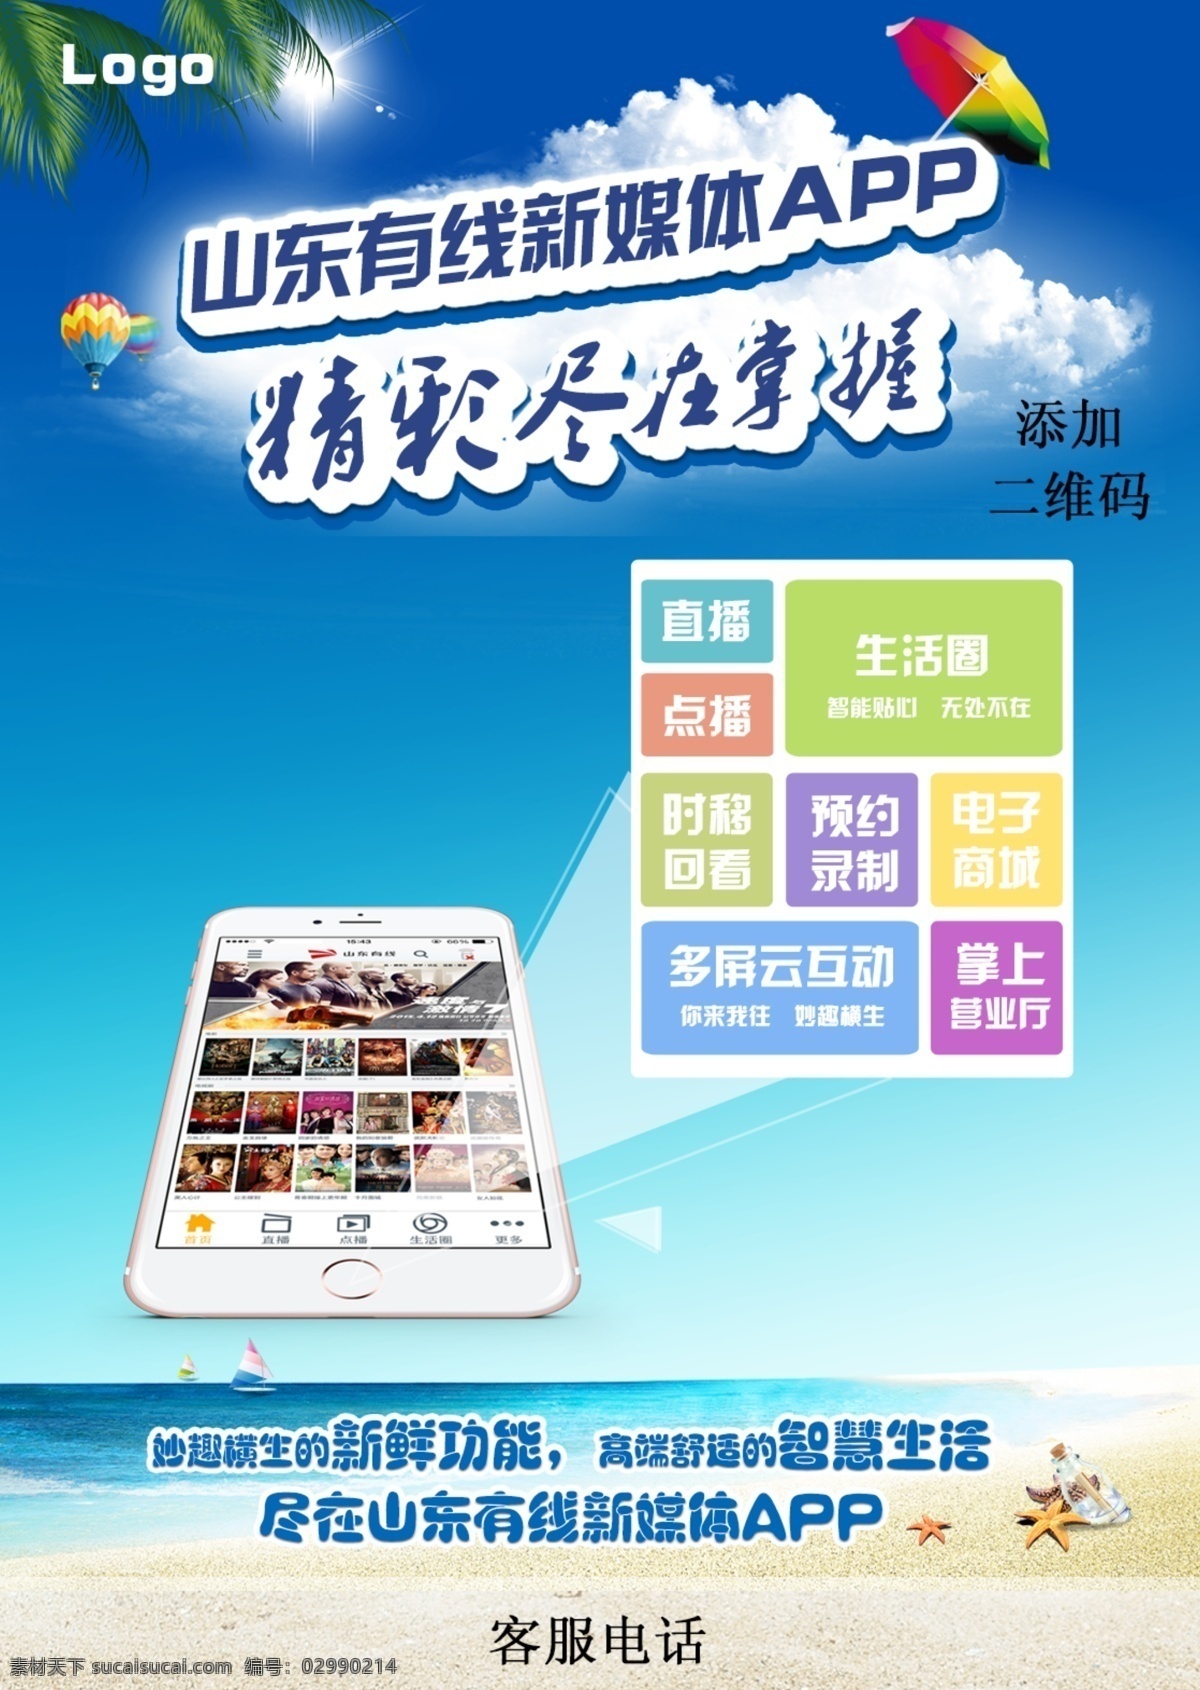 夏日 手机 app 蓝色 海报 高清 手机app 大海 矩形 白色